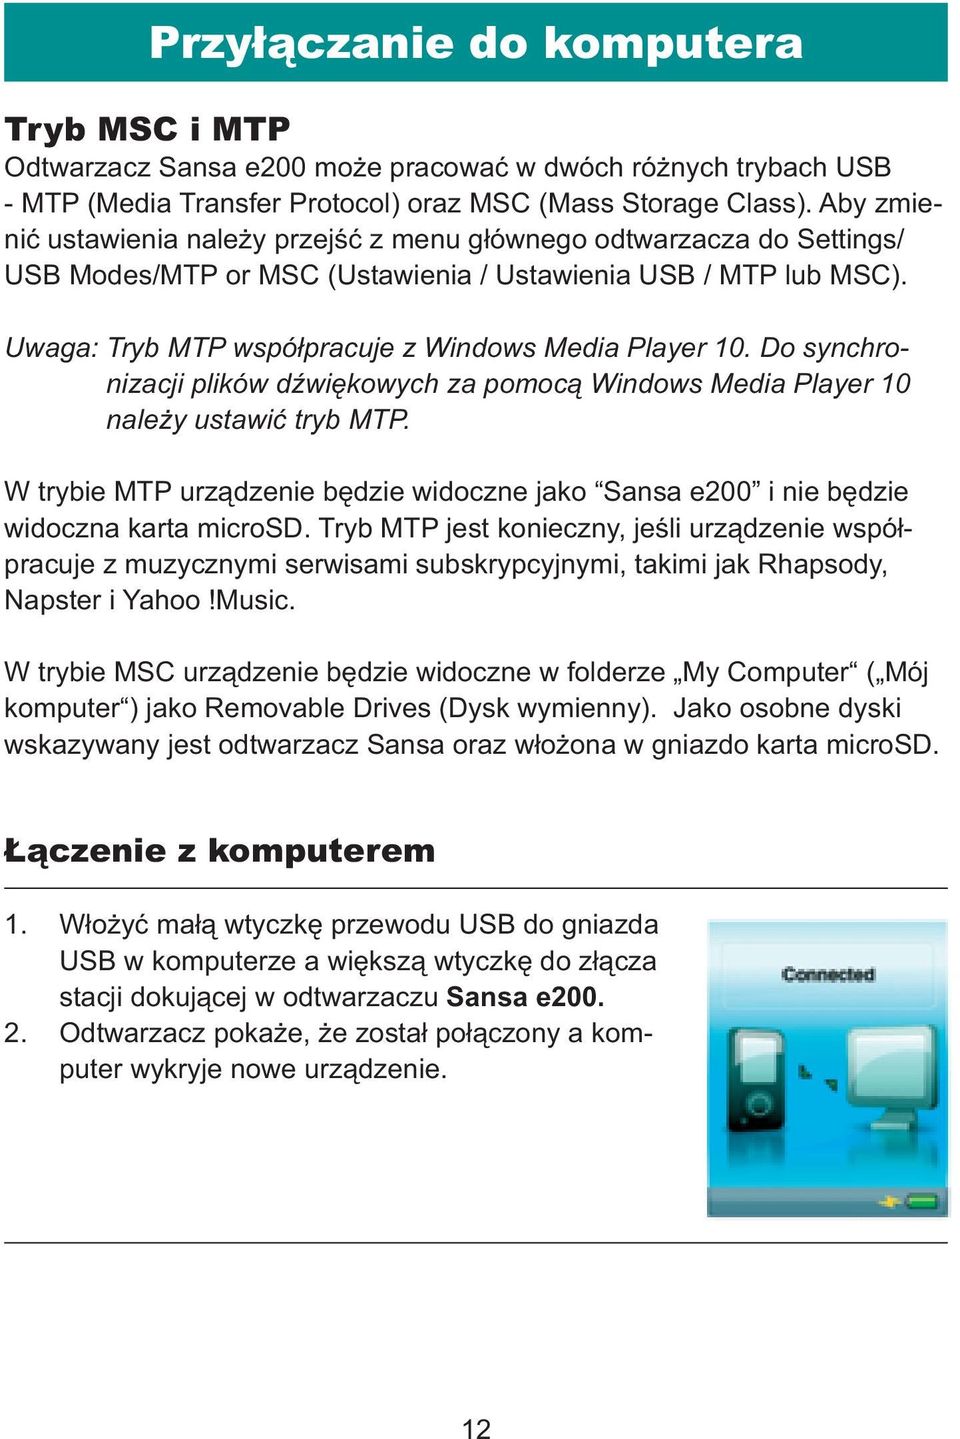 Do synchronizacji plików dźwiękowych za pomocą Windows Media Player 10 należy ustawić tryb MTP. W trybie MTP urządzenie będzie widoczne jako Sansa e200 i nie będzie widoczna karta microsd.